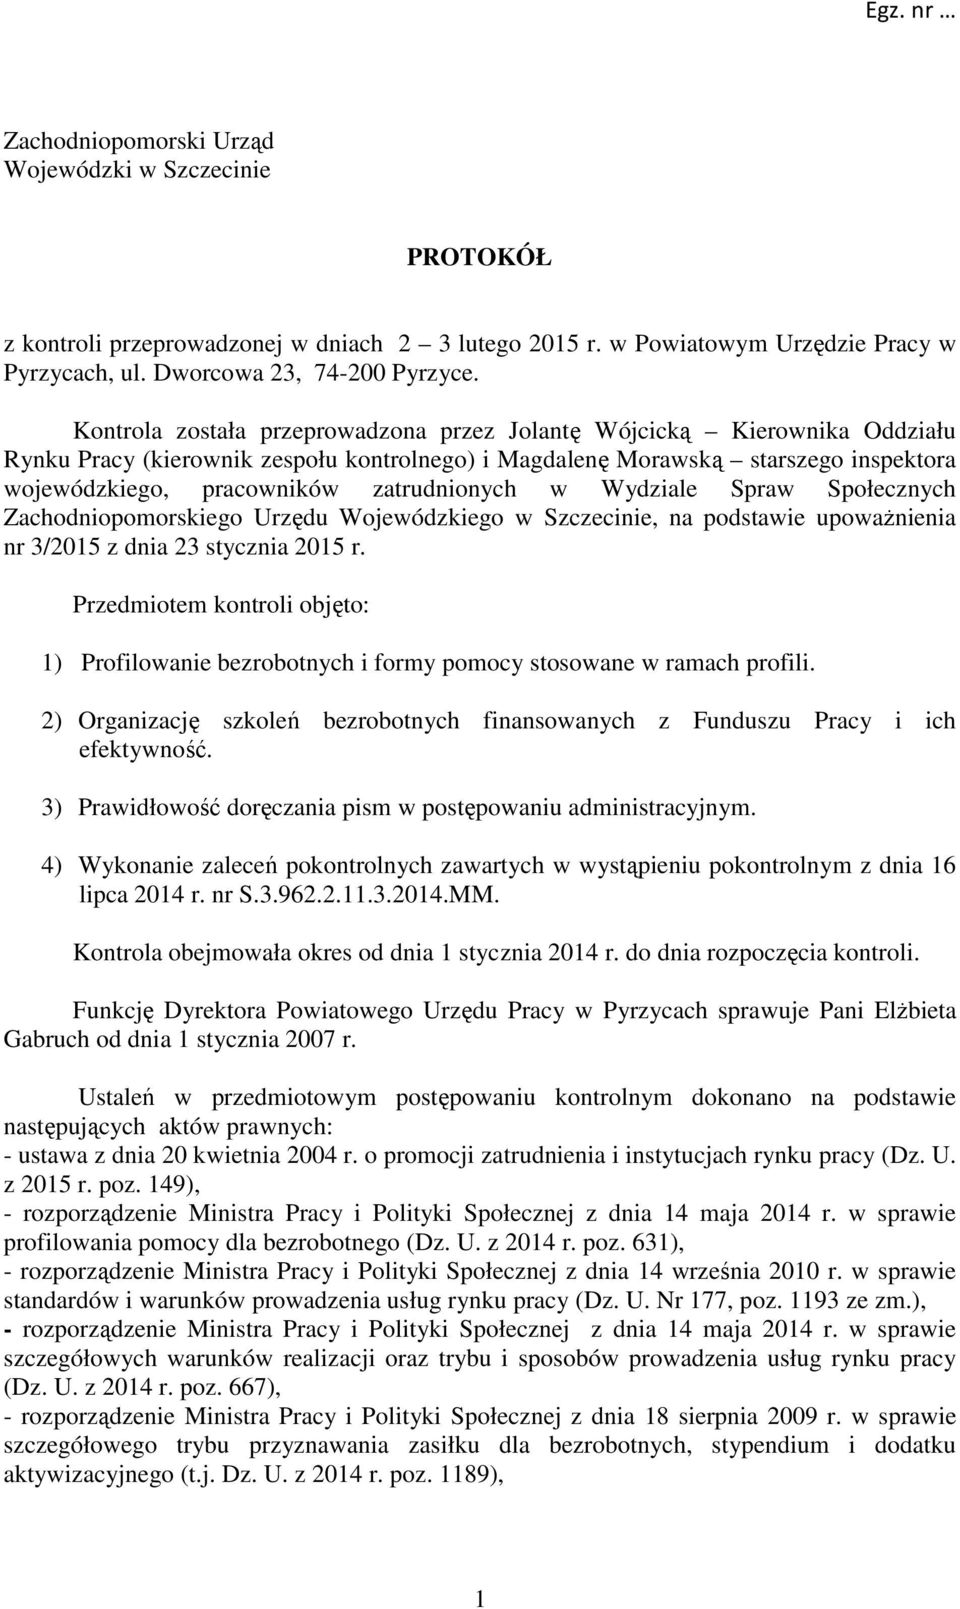 zatrudnionych w Wydziale Spraw Społecznych Zachodniopomorskiego Urzędu Wojewódzkiego w Szczecinie, na podstawie upoważnienia nr 3/2015 z dnia 23 stycznia 2015 r.